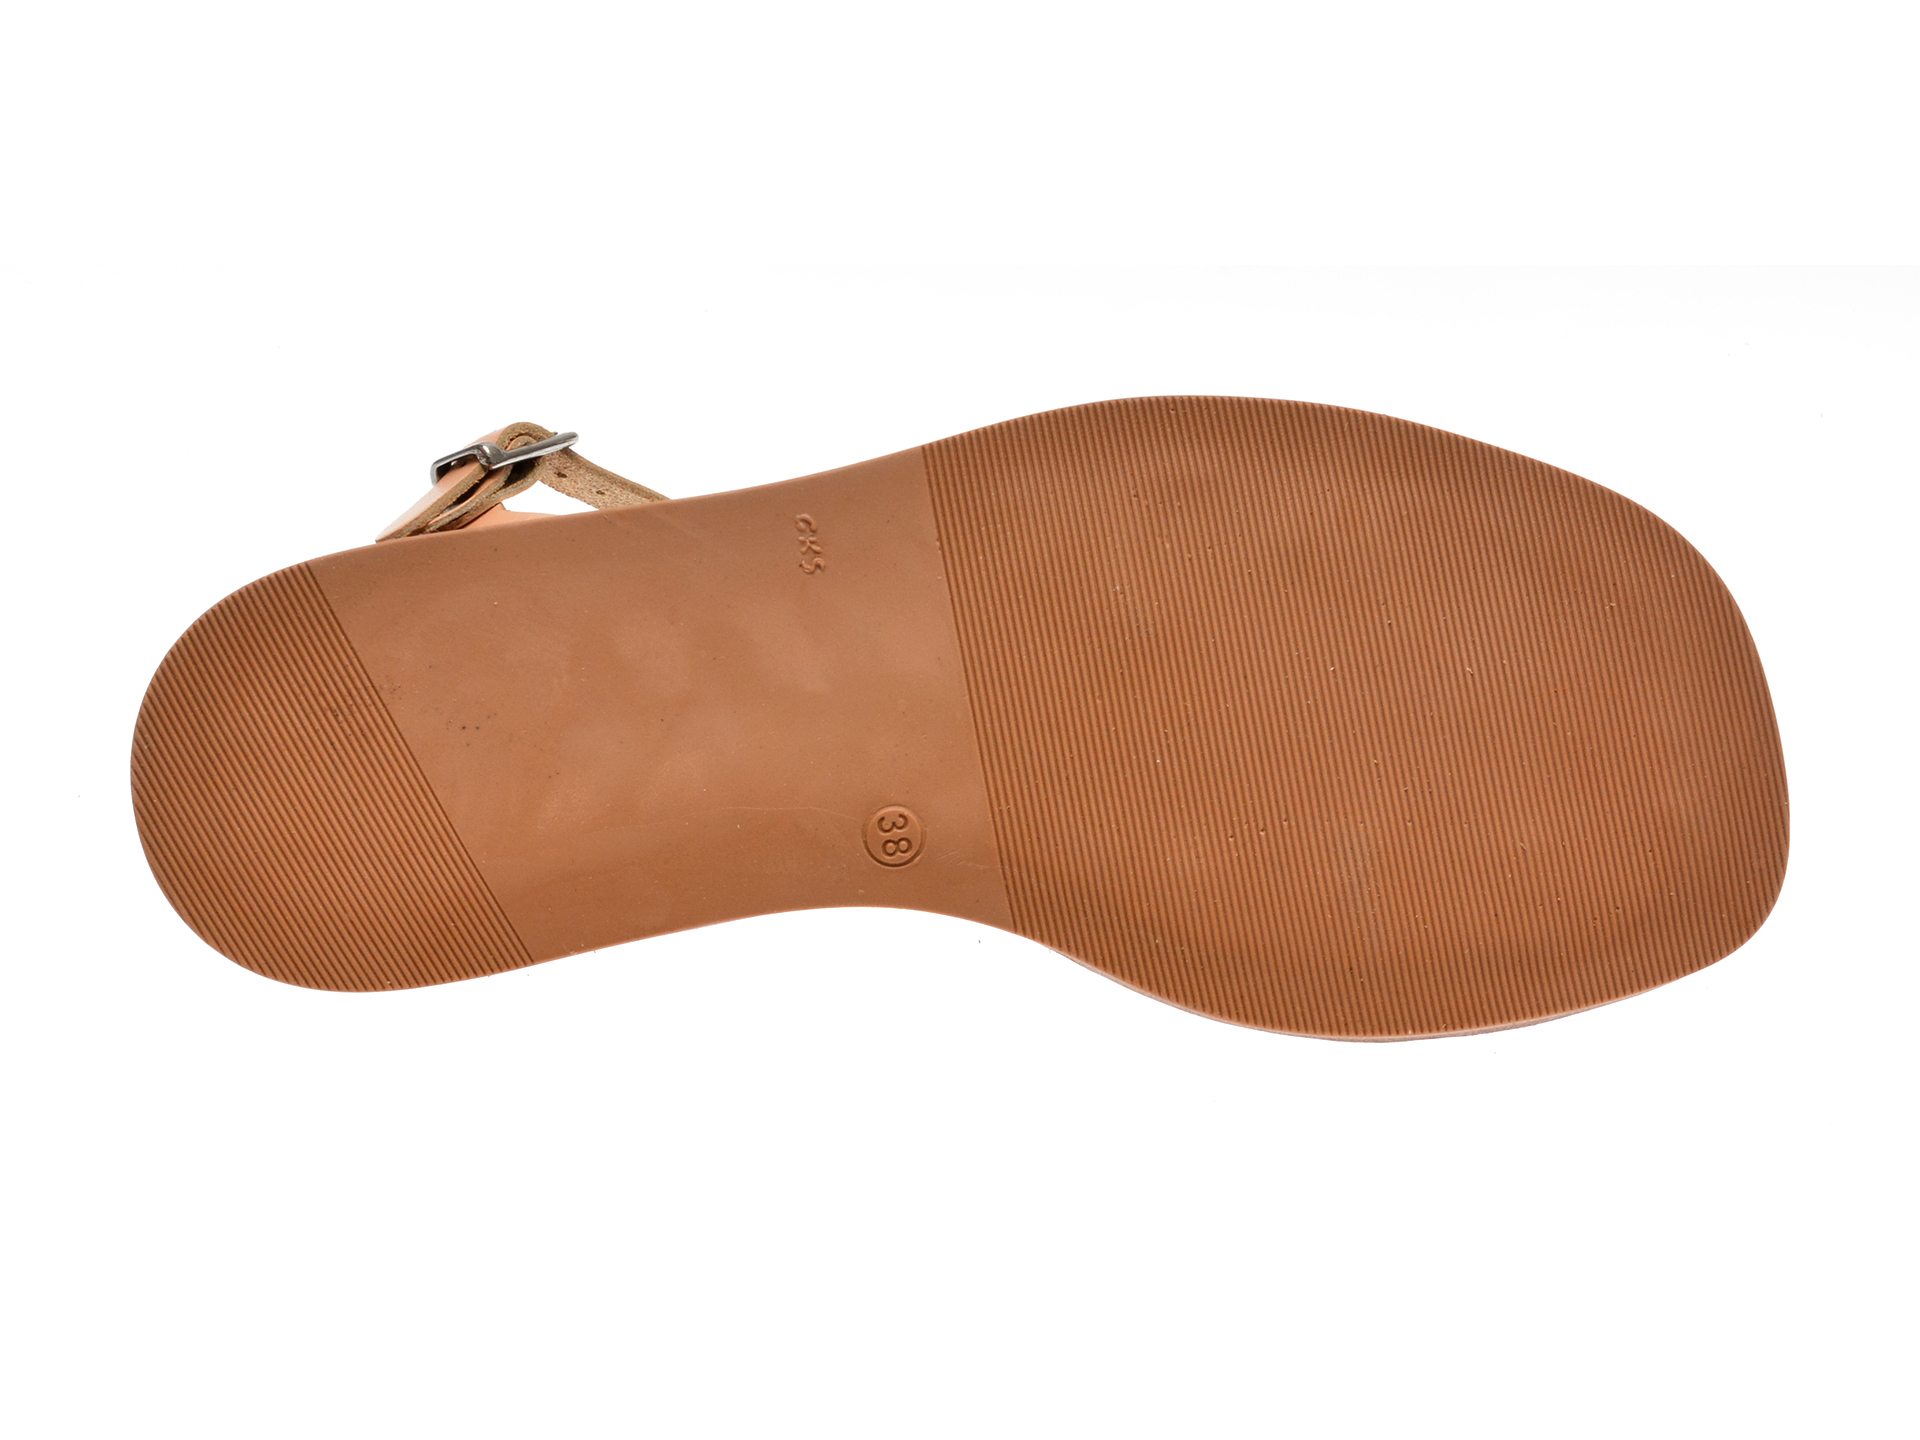 Sandale casual GRYXX nude, 11507, din piele naturala